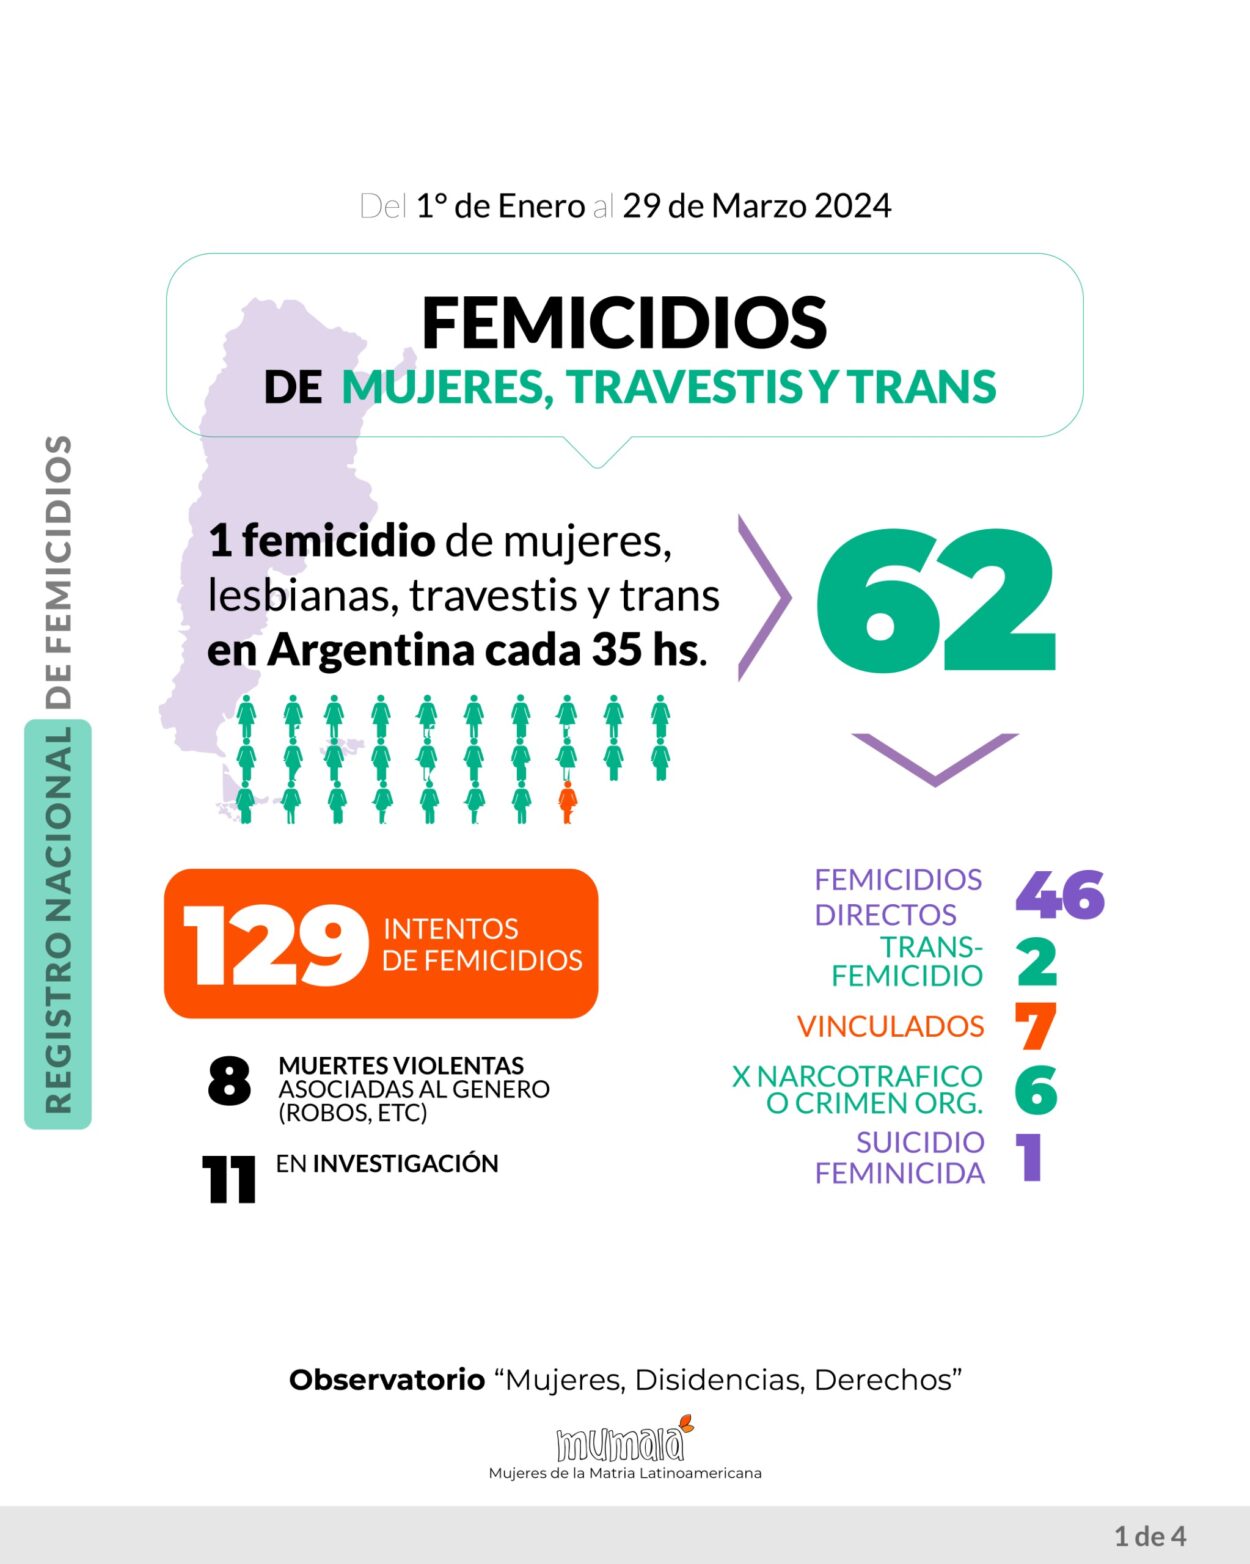 El Observatorio MuMaLa denunció que en 3 meses se han registrado 62 feminicidios, uno cada 35 horas imagen-2